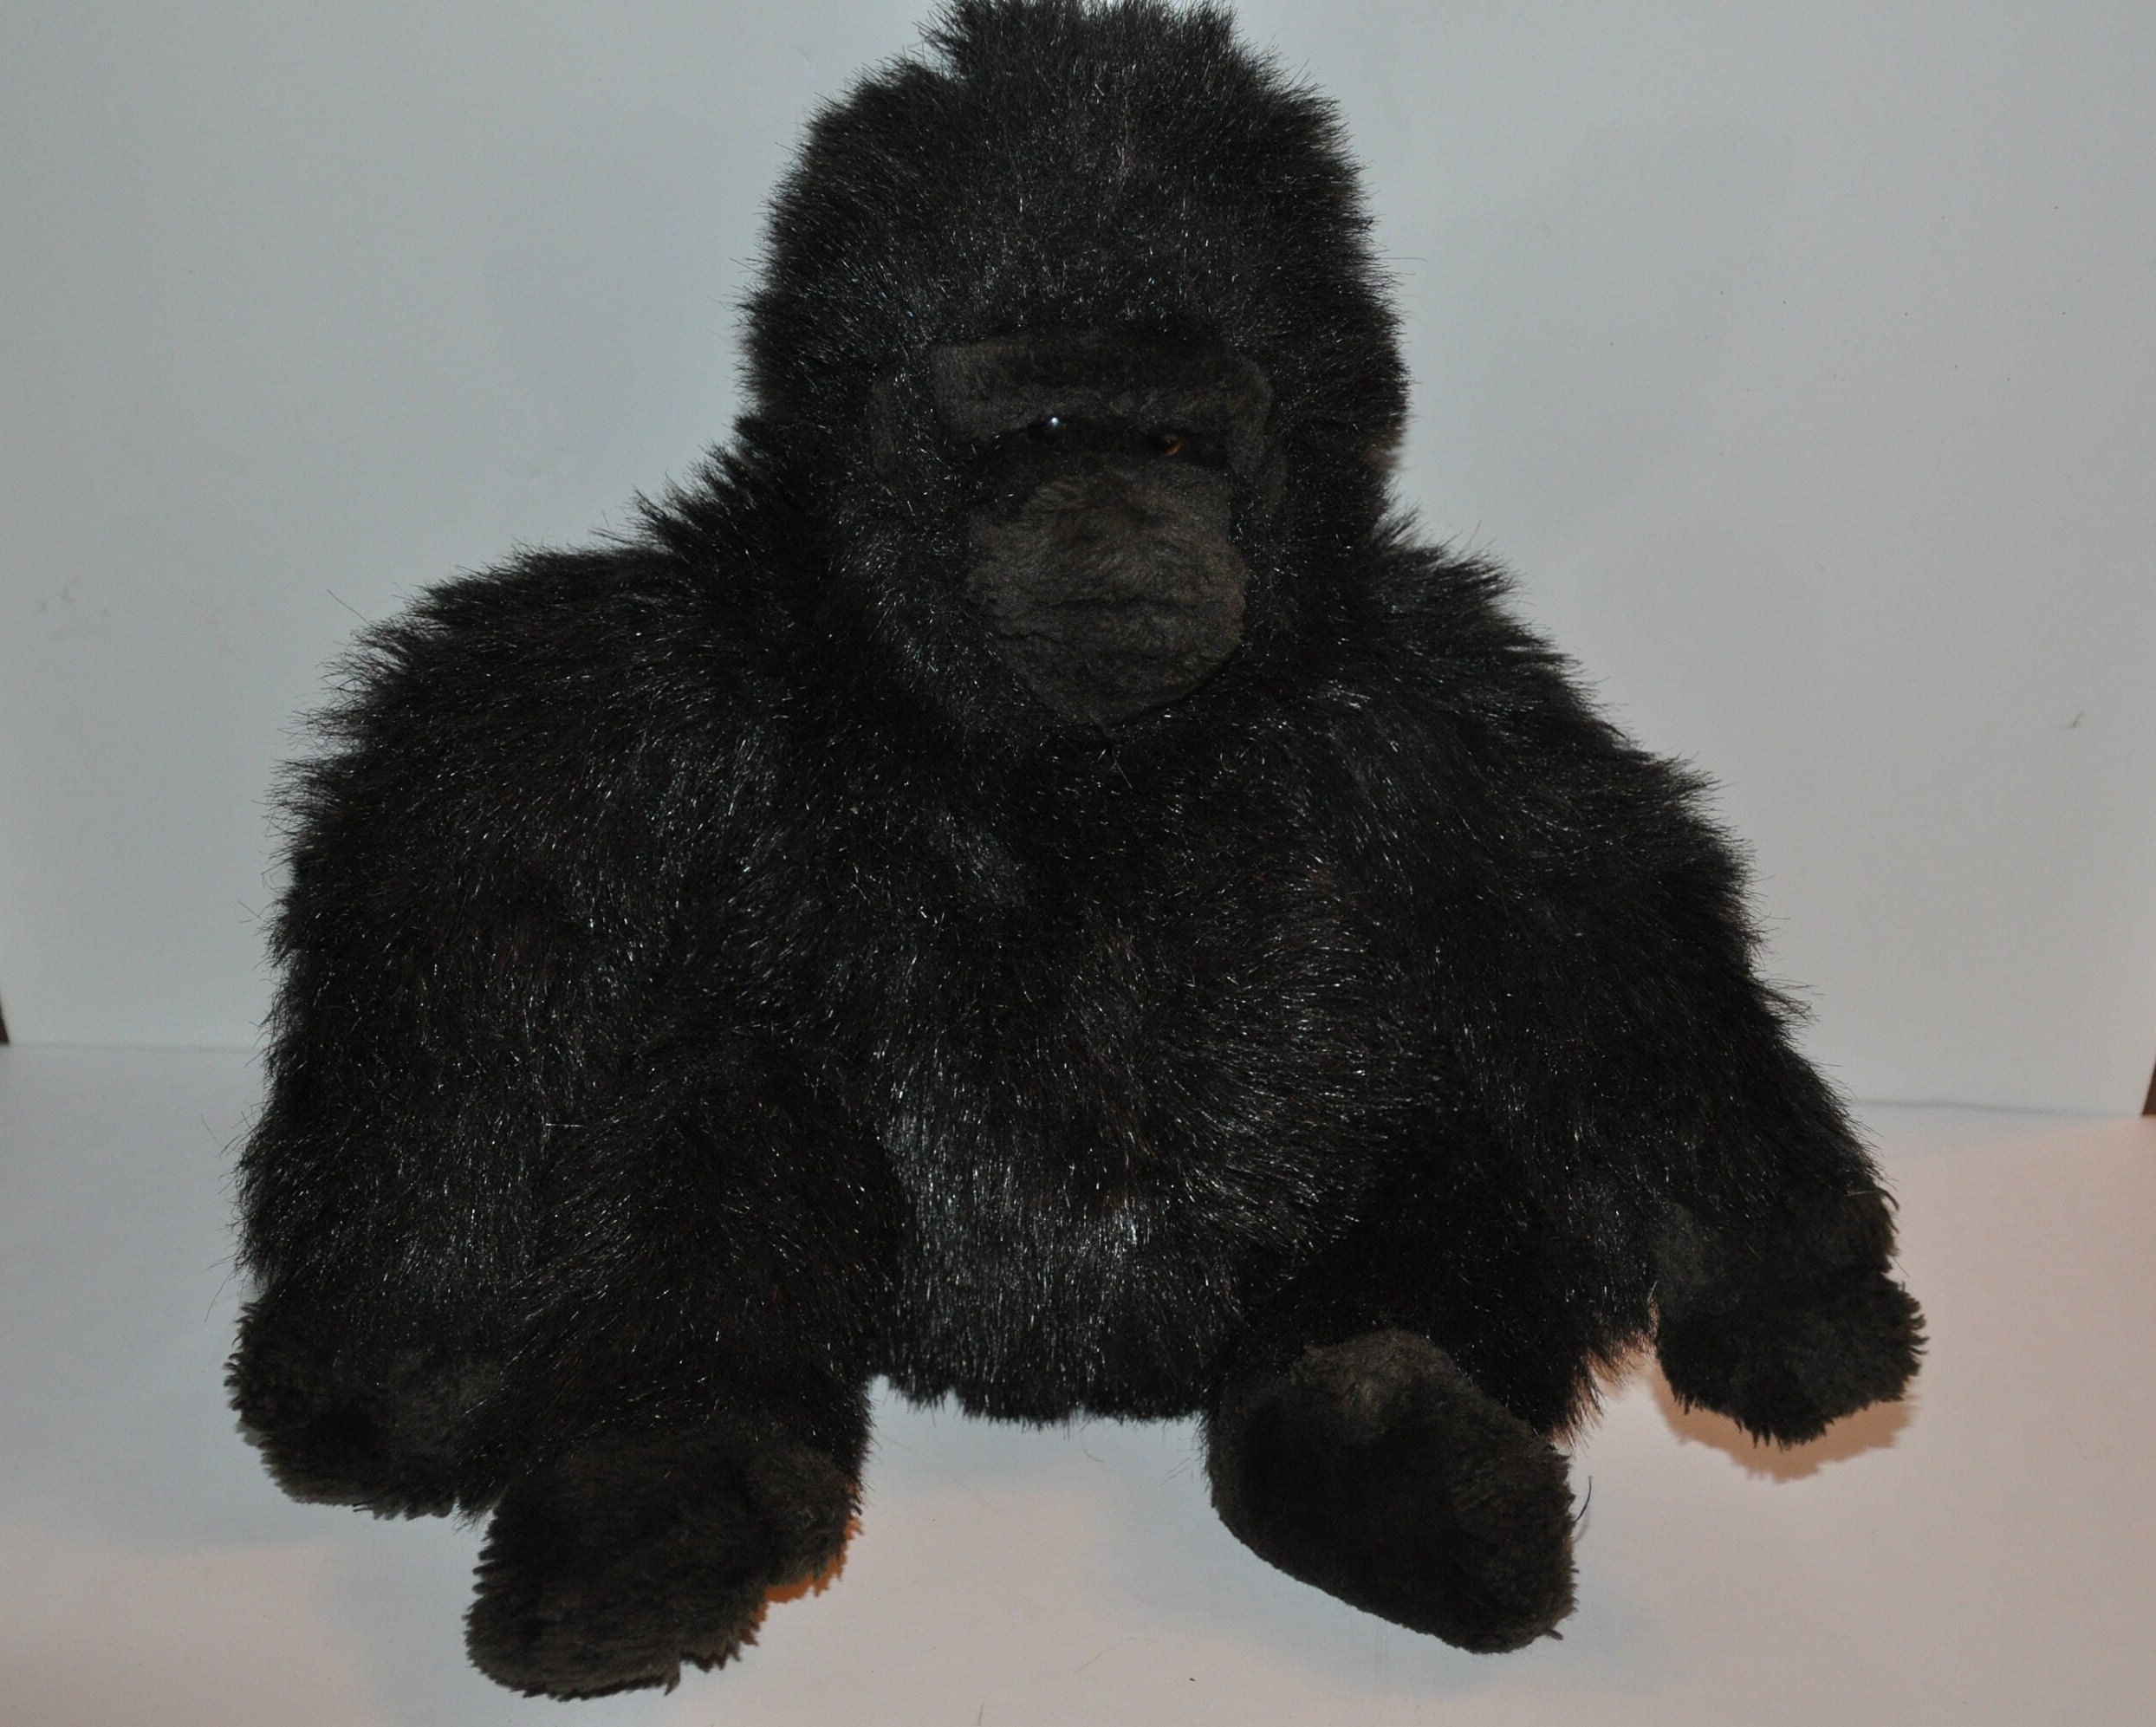 Polychrome Gorilla Tag Plush Creative Gorilla Monkey Game Related Dolls  High-quality Plush Fun Animal Plush Toys